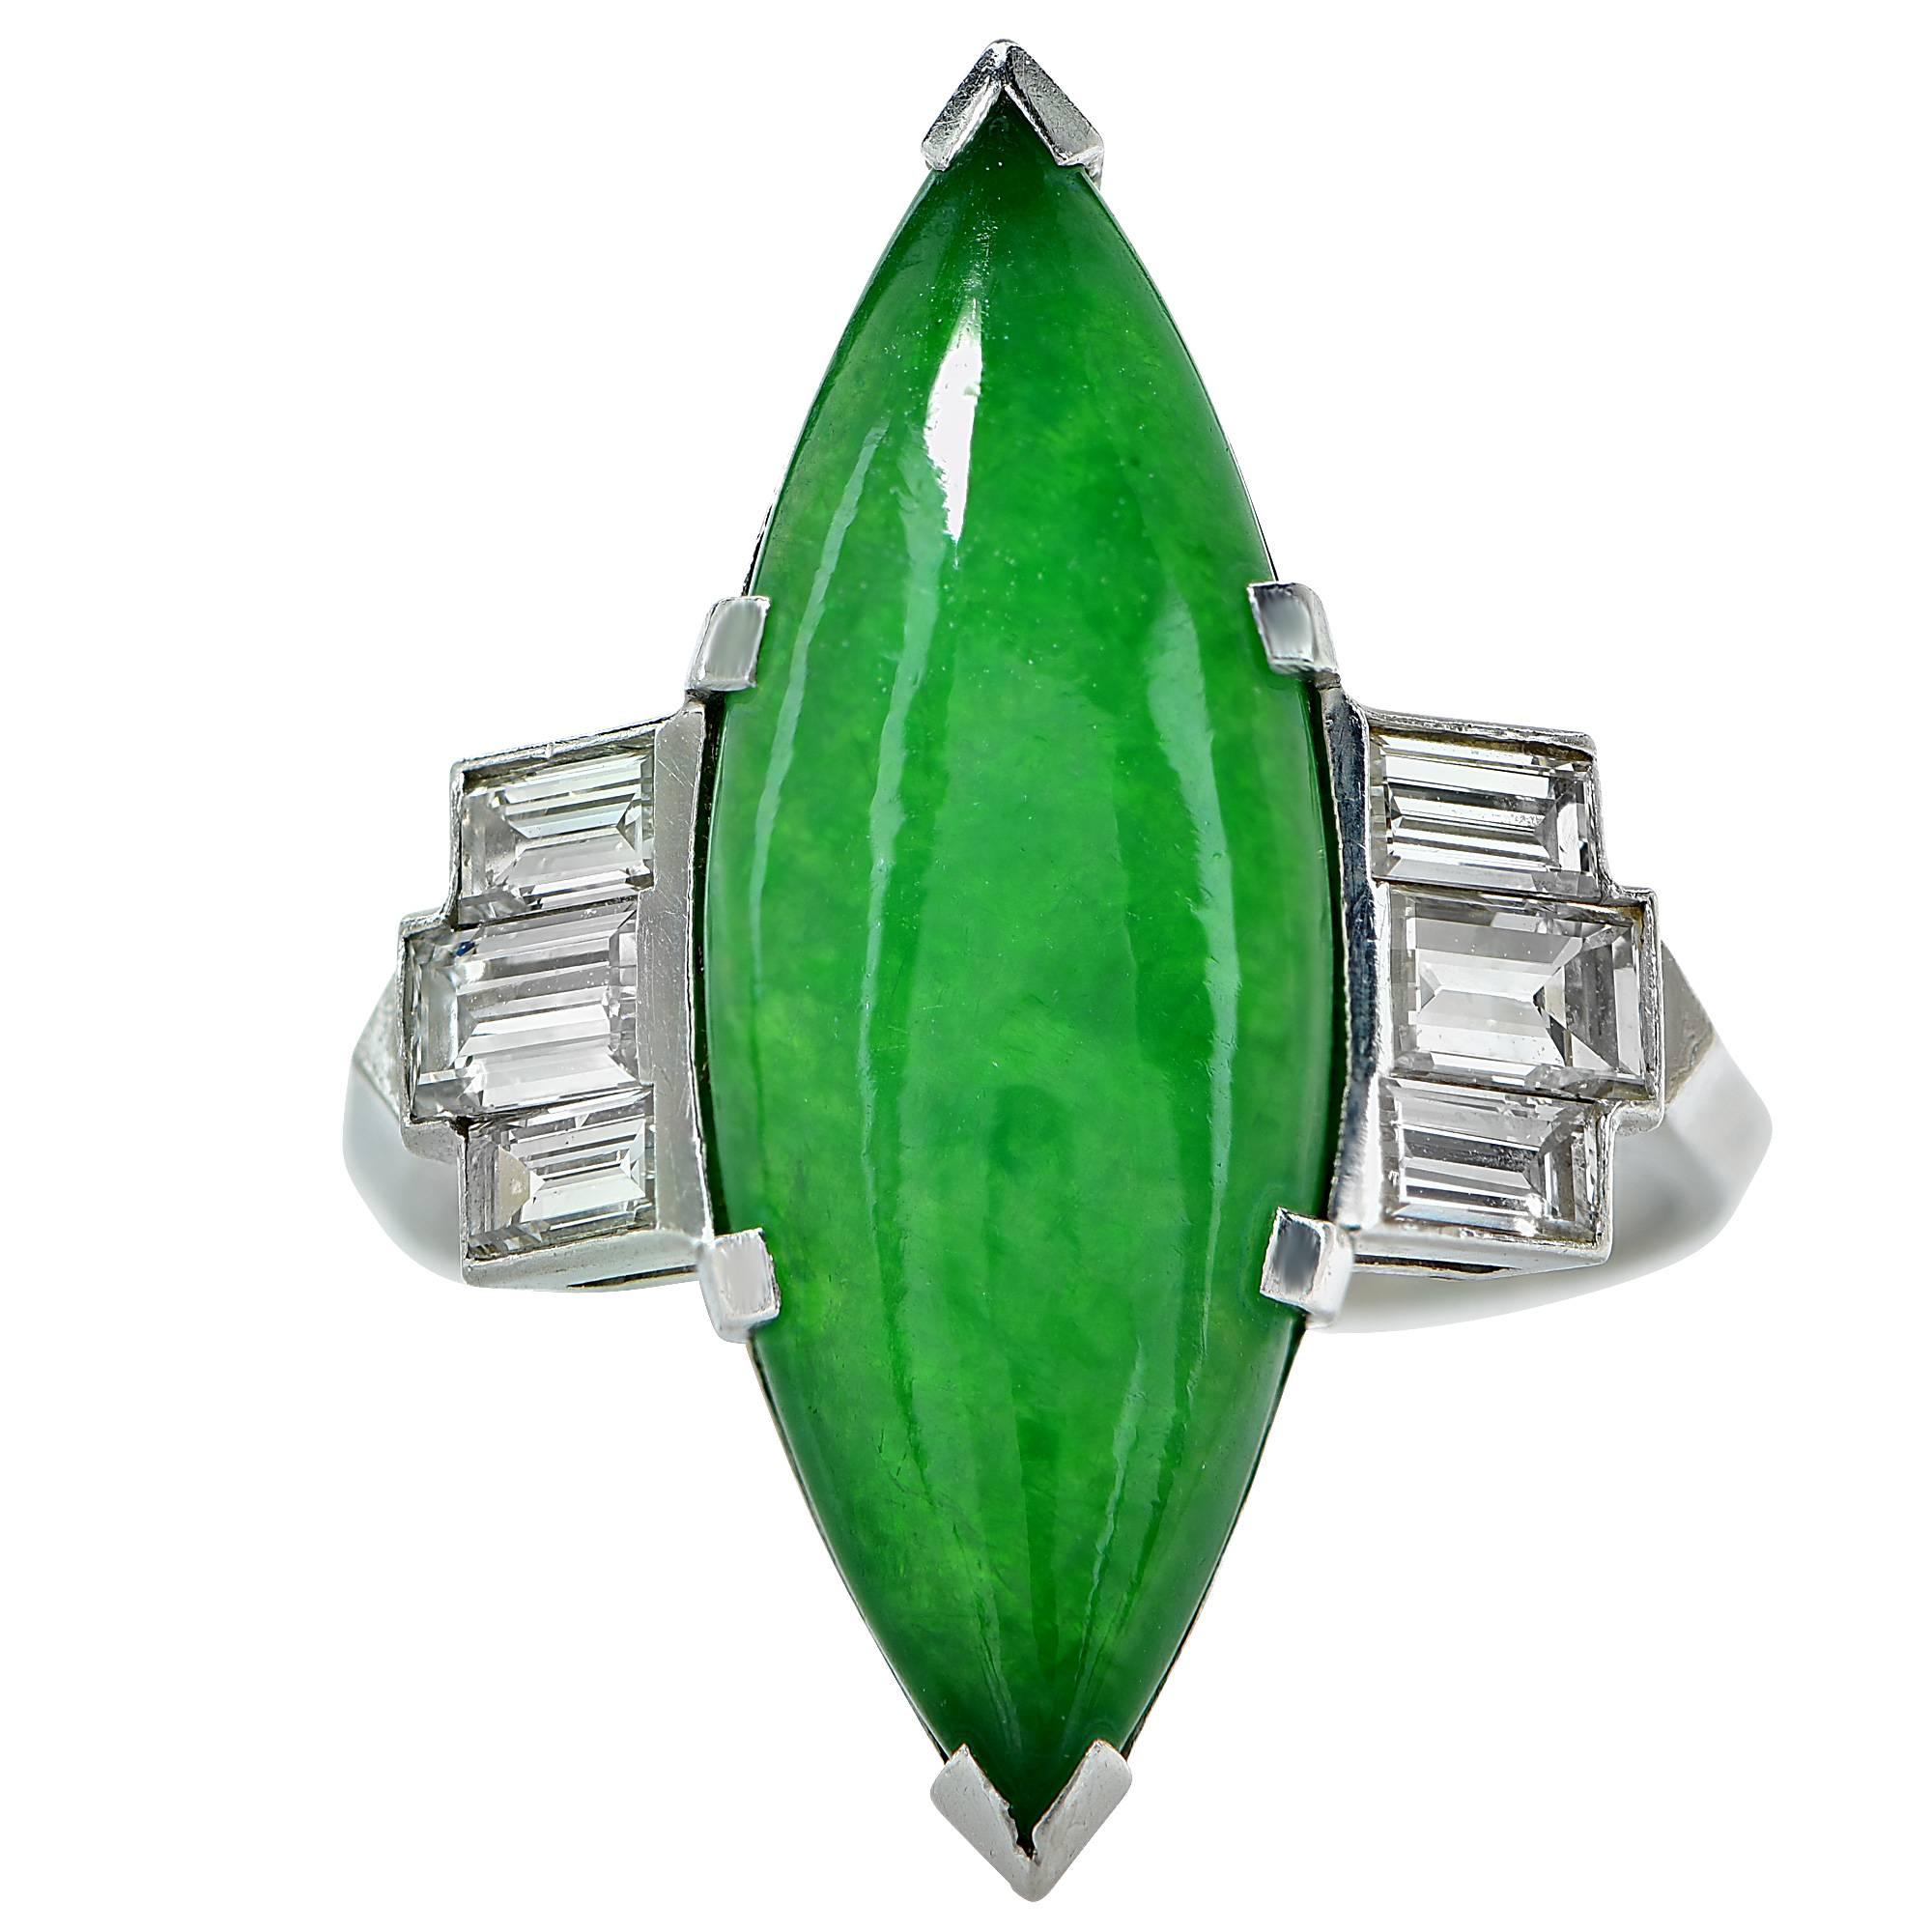 Platinring aus den 1950er Jahren mit einem GIA-geprüften natürlichen Jade-Cabochon mit einem Gewicht von ca. 5,50cts, akzentuiert durch 6 Diamanten im Baguetteschliff mit einem Gesamtgewicht von ca. 1,10cts, Farbe F, Reinheit VS.

Der Ring hat die